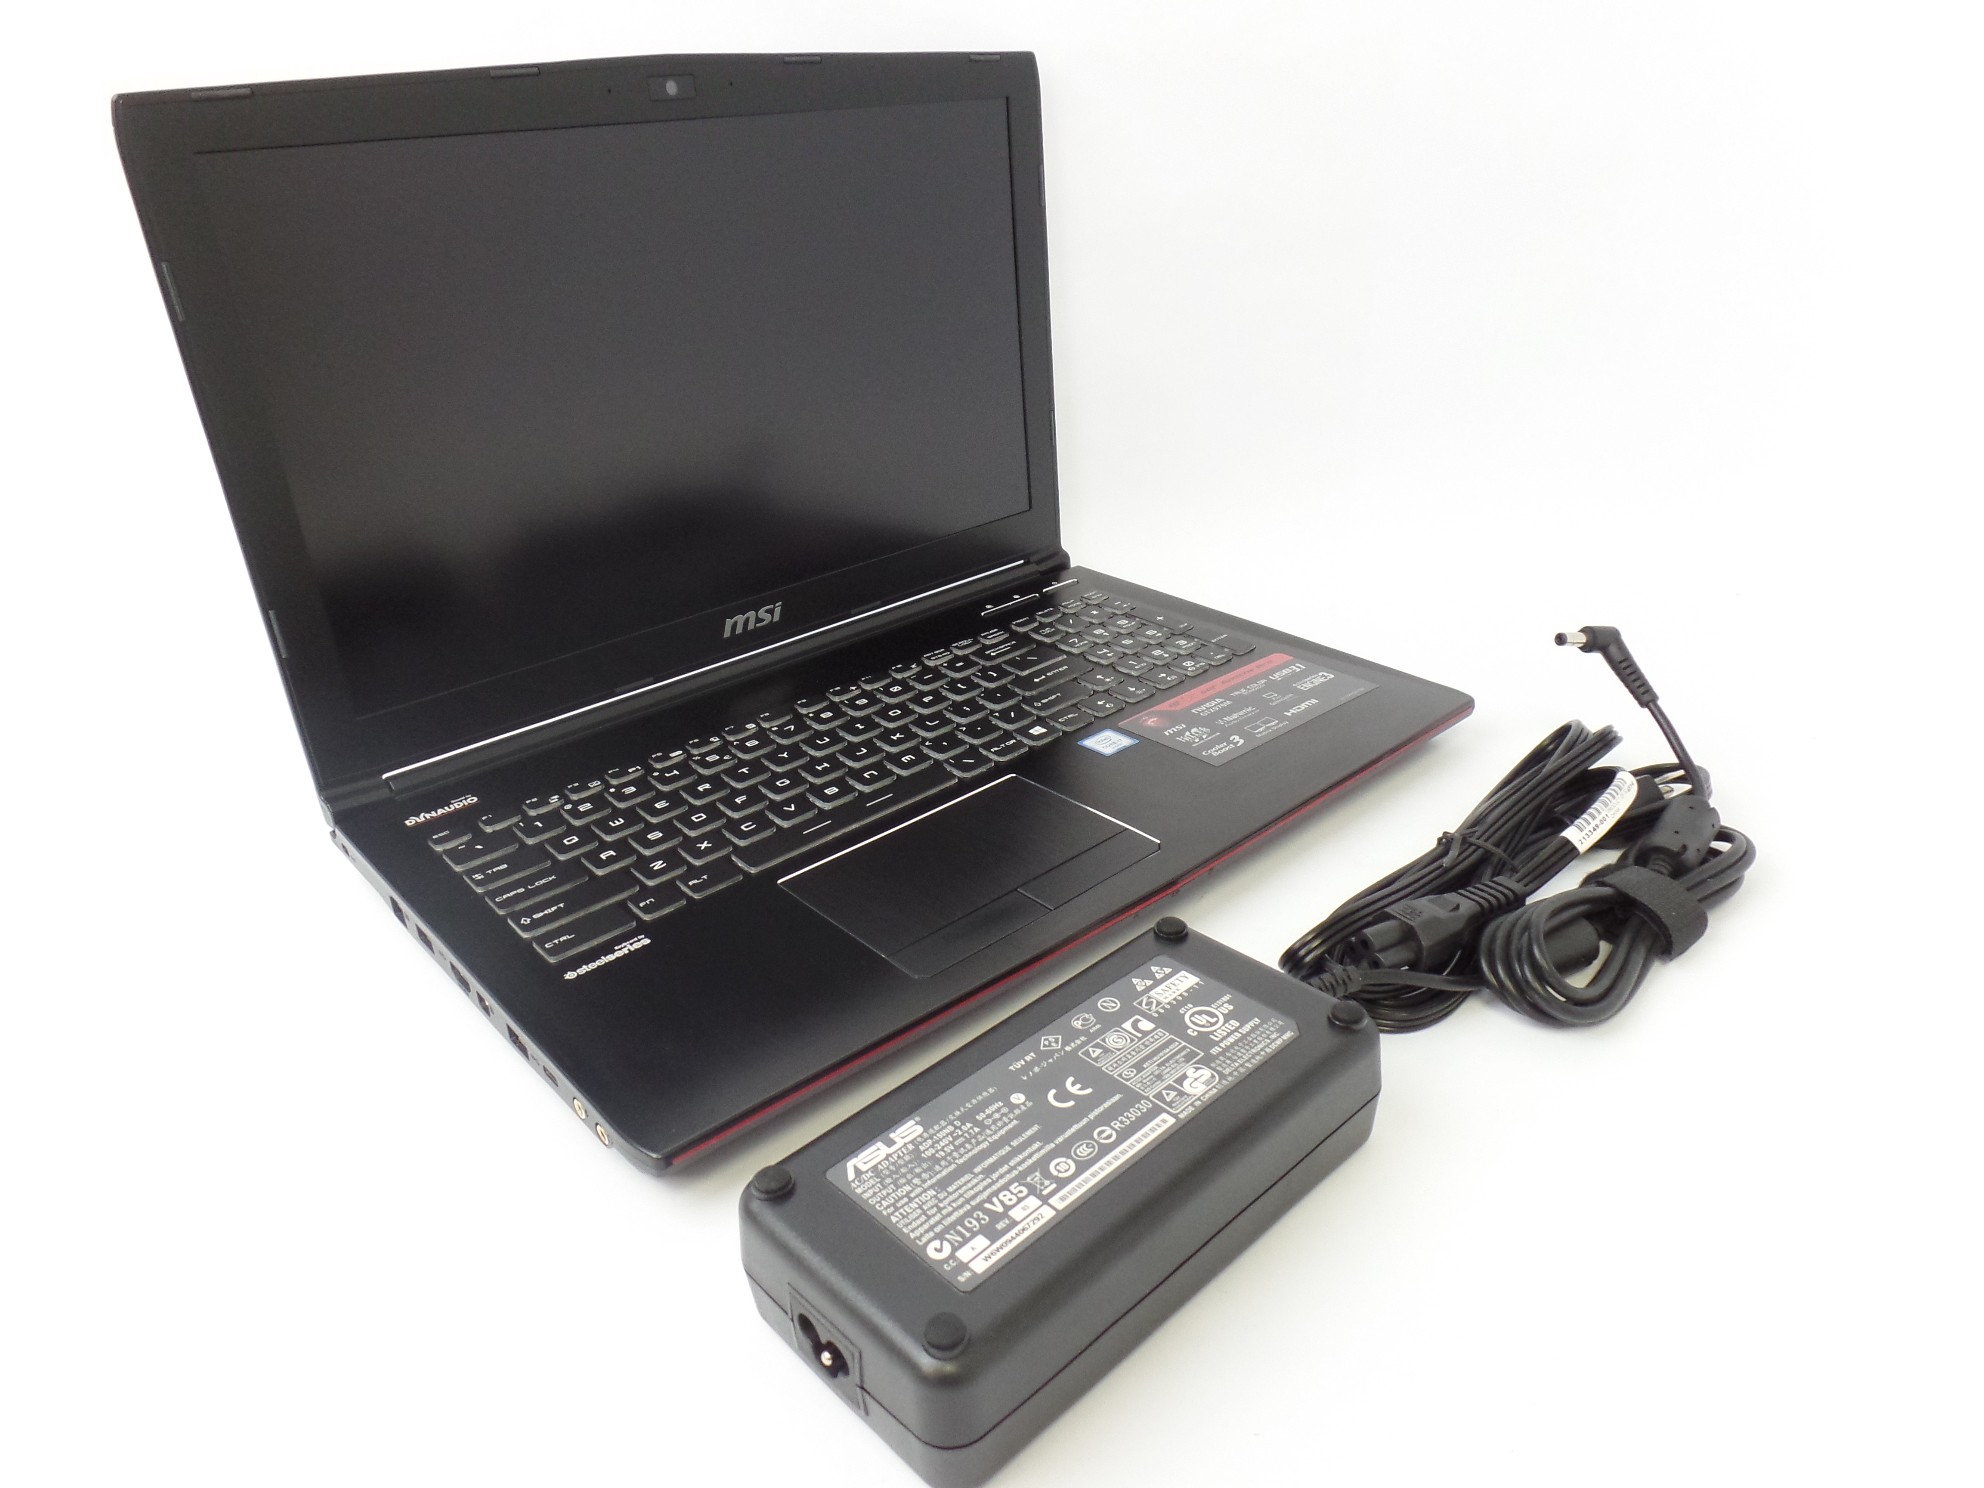 MSI GE62 6QF-233US 15.6" FHD i7-6700HQ 16GB 1TB +128GB GTX 970M 3GB W10H Laptop 